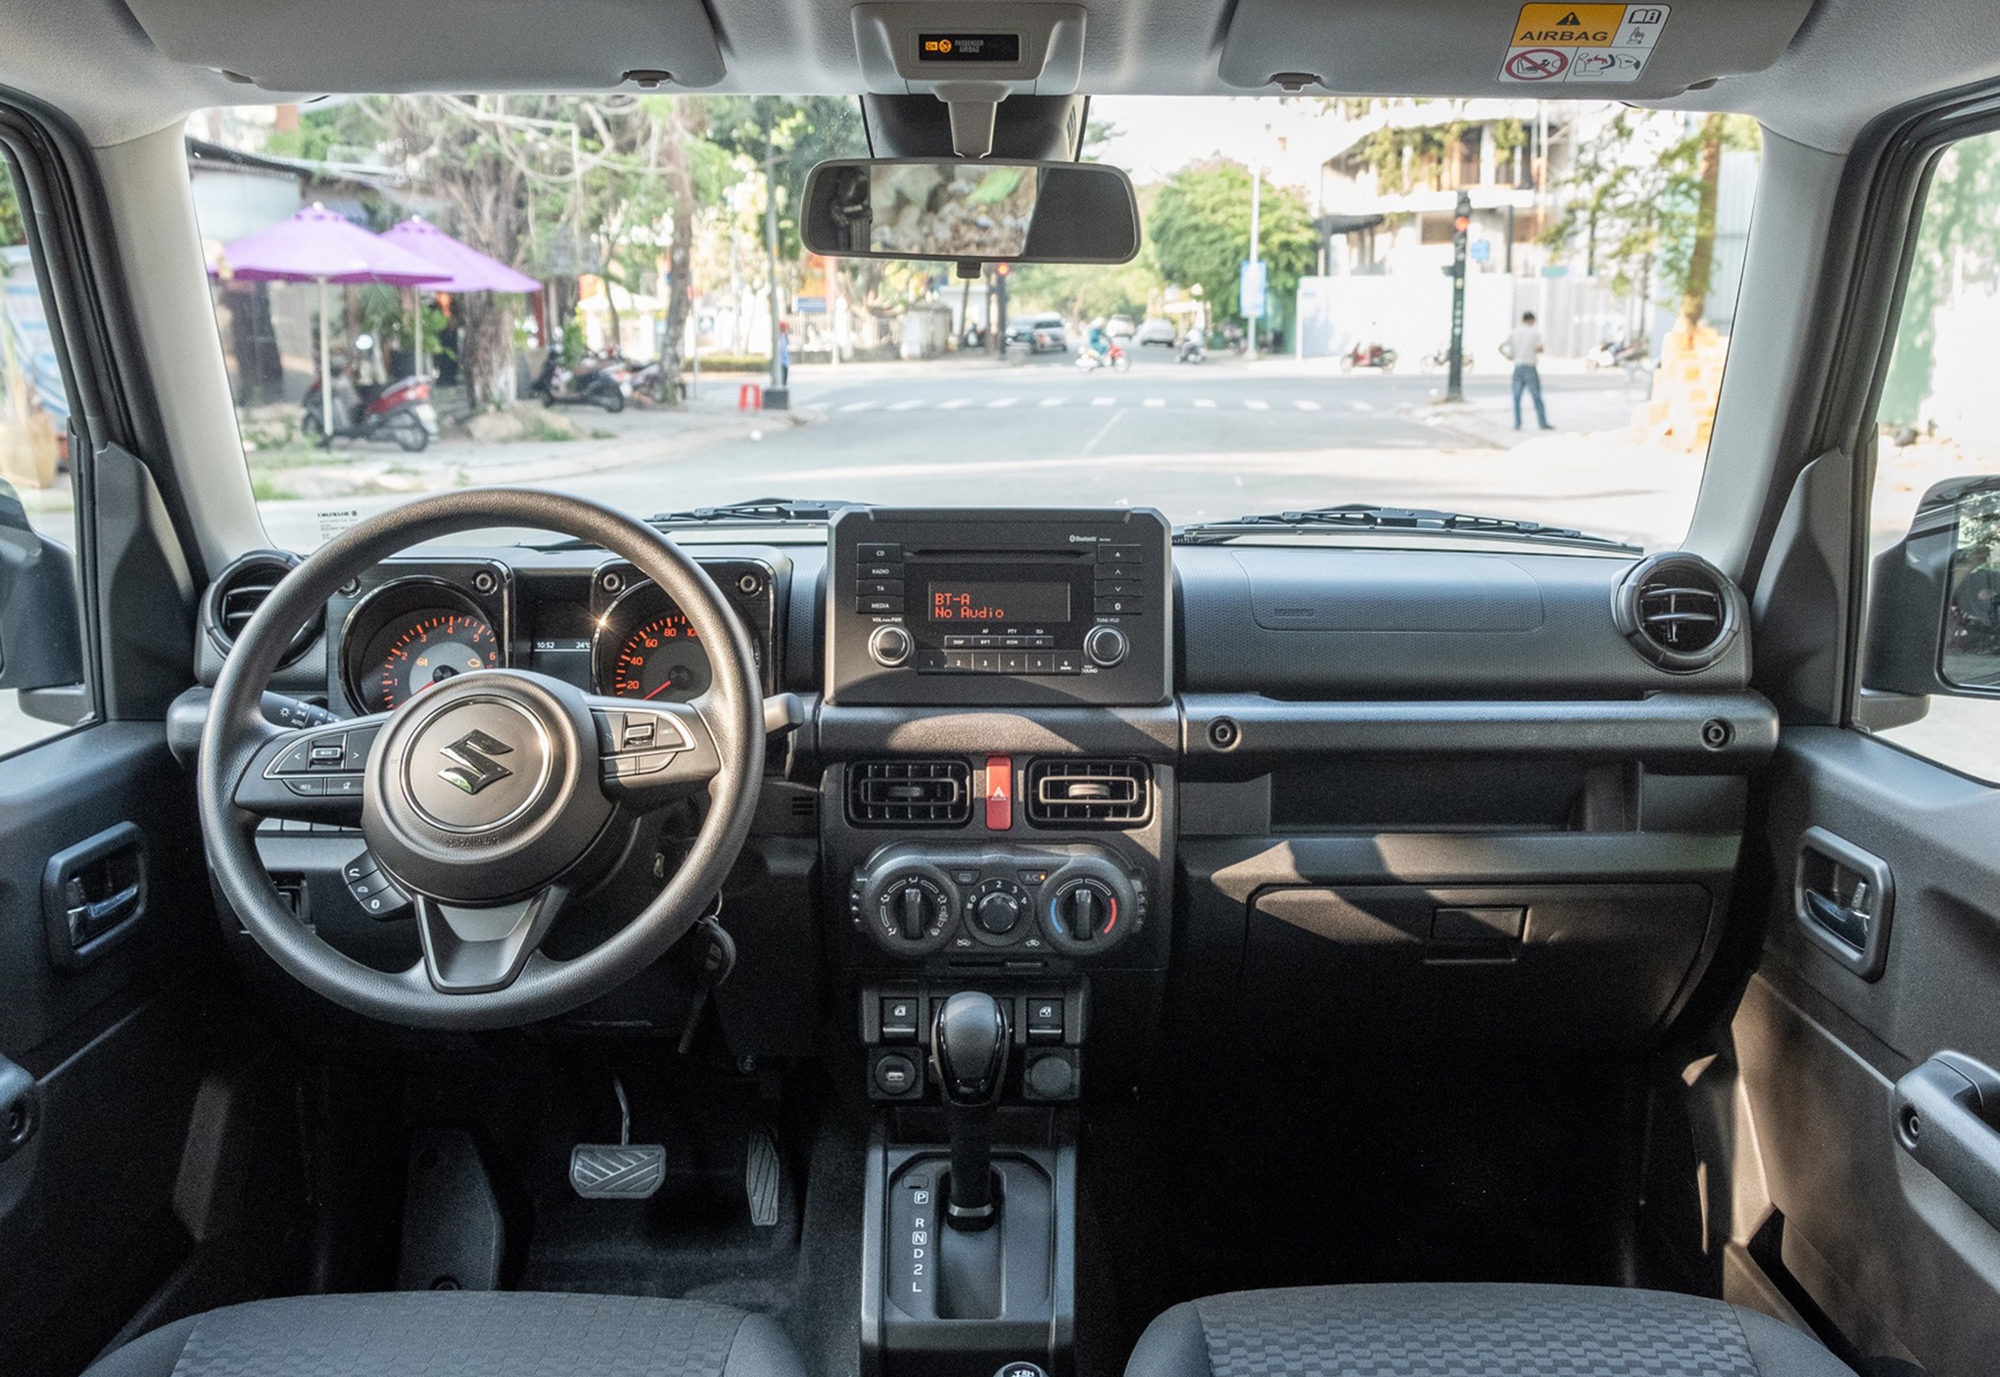 Đại lý ồ ạt nhận cọc Suzuki Jimny: Đã có 1 xe mẫu về Việt Nam, giá dự kiến 789 triệu đồng - Ảnh 3.